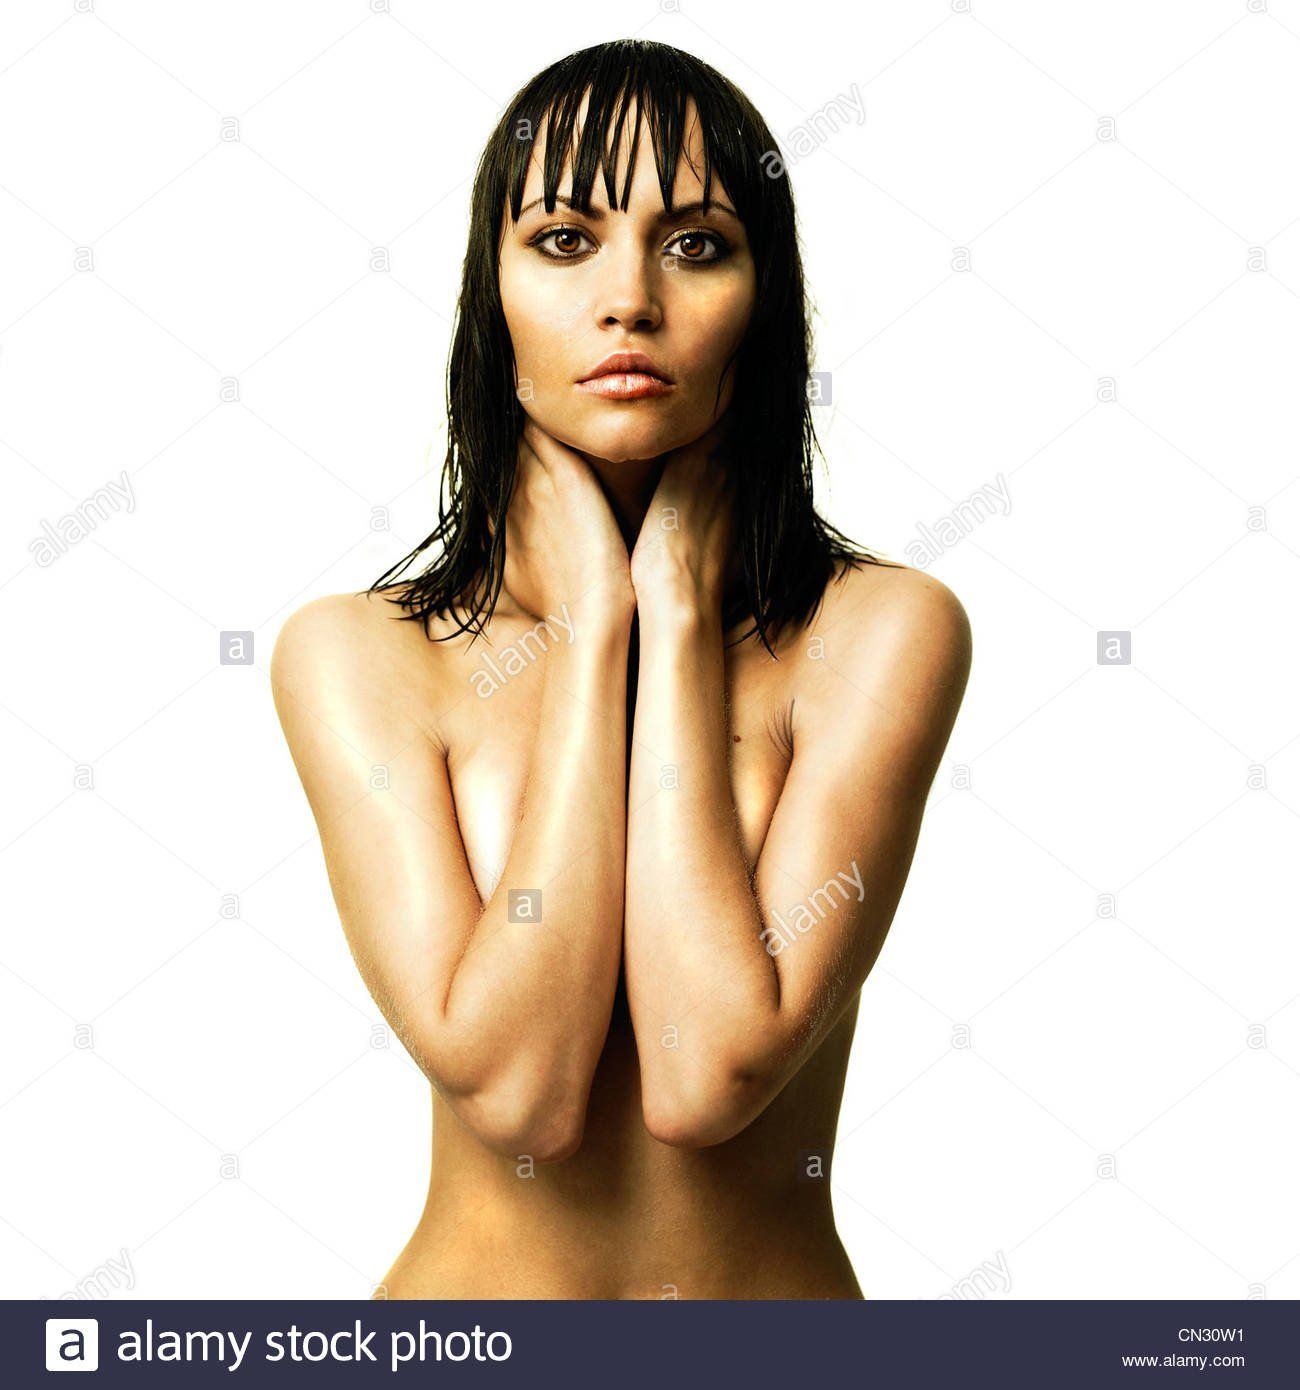 Thin gujarati girl nude